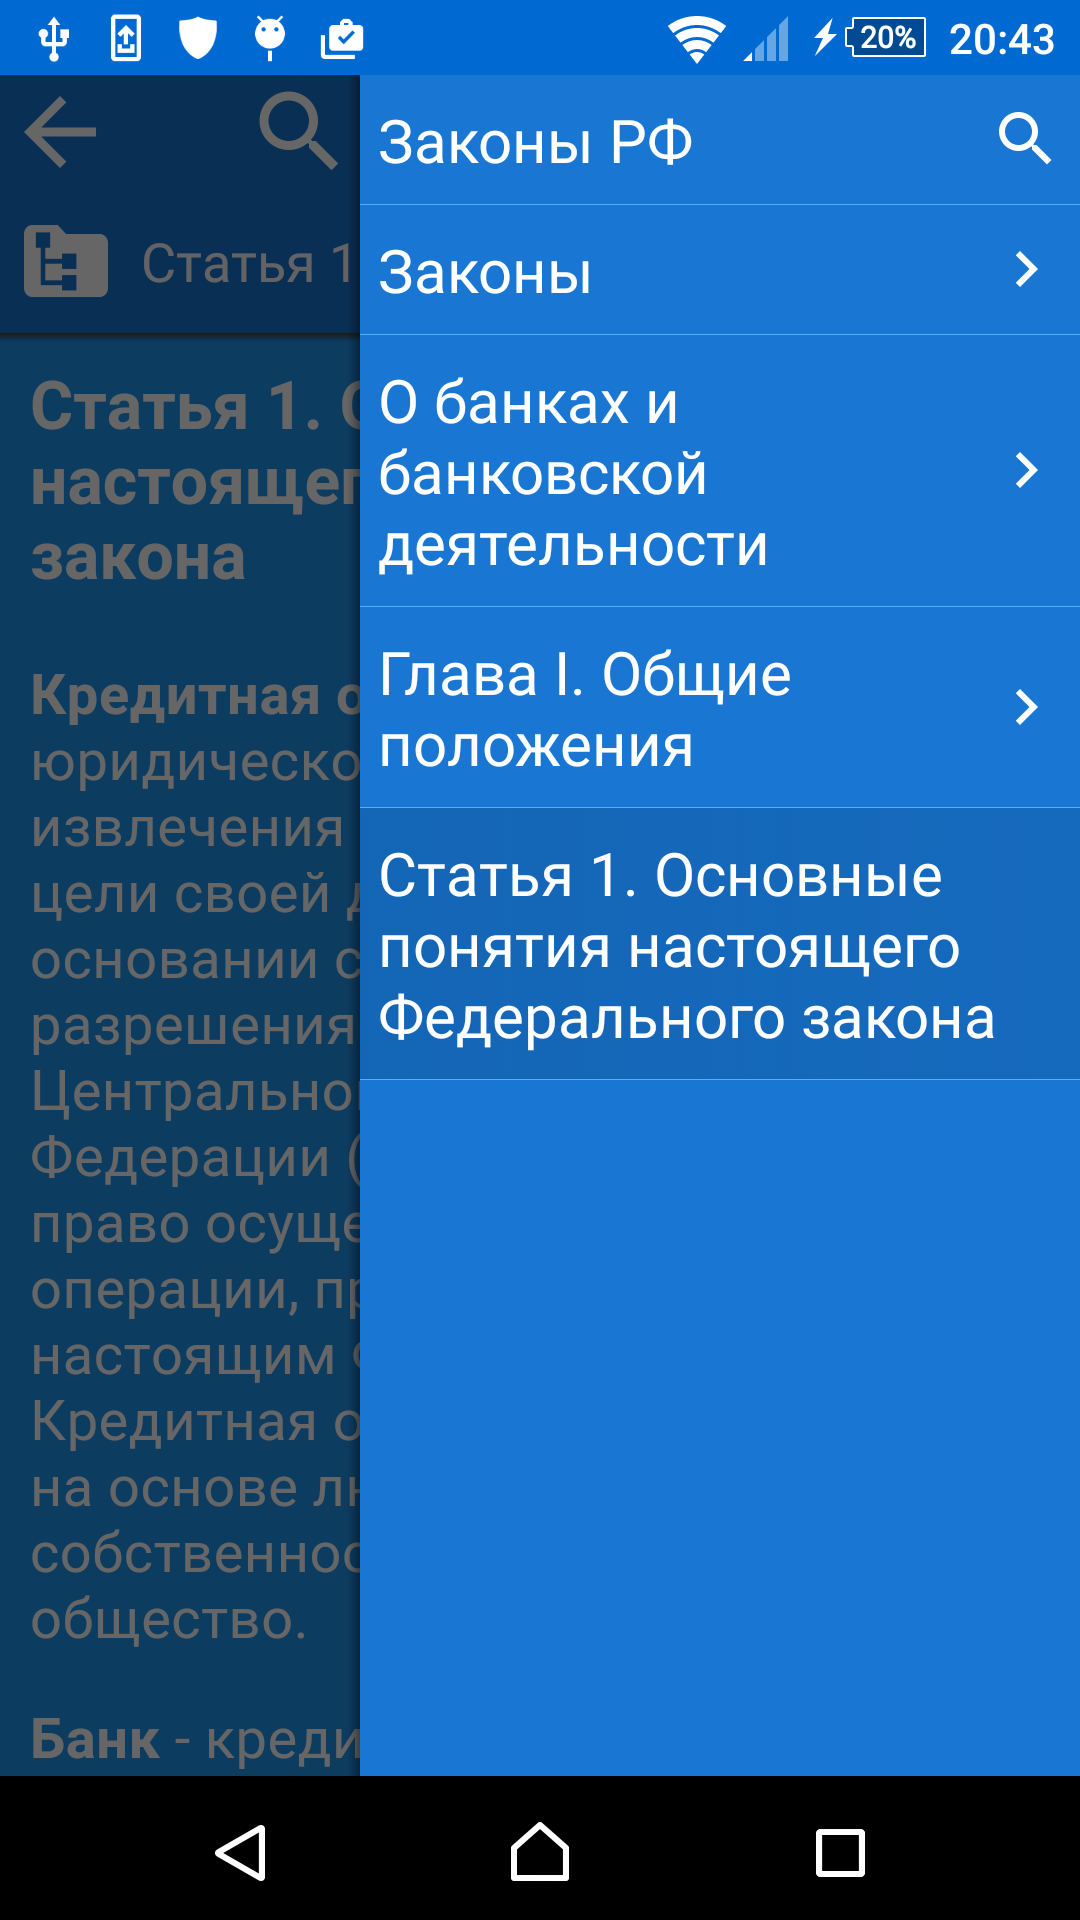 Android application Сборник законов и кодексов РФ. screenshort